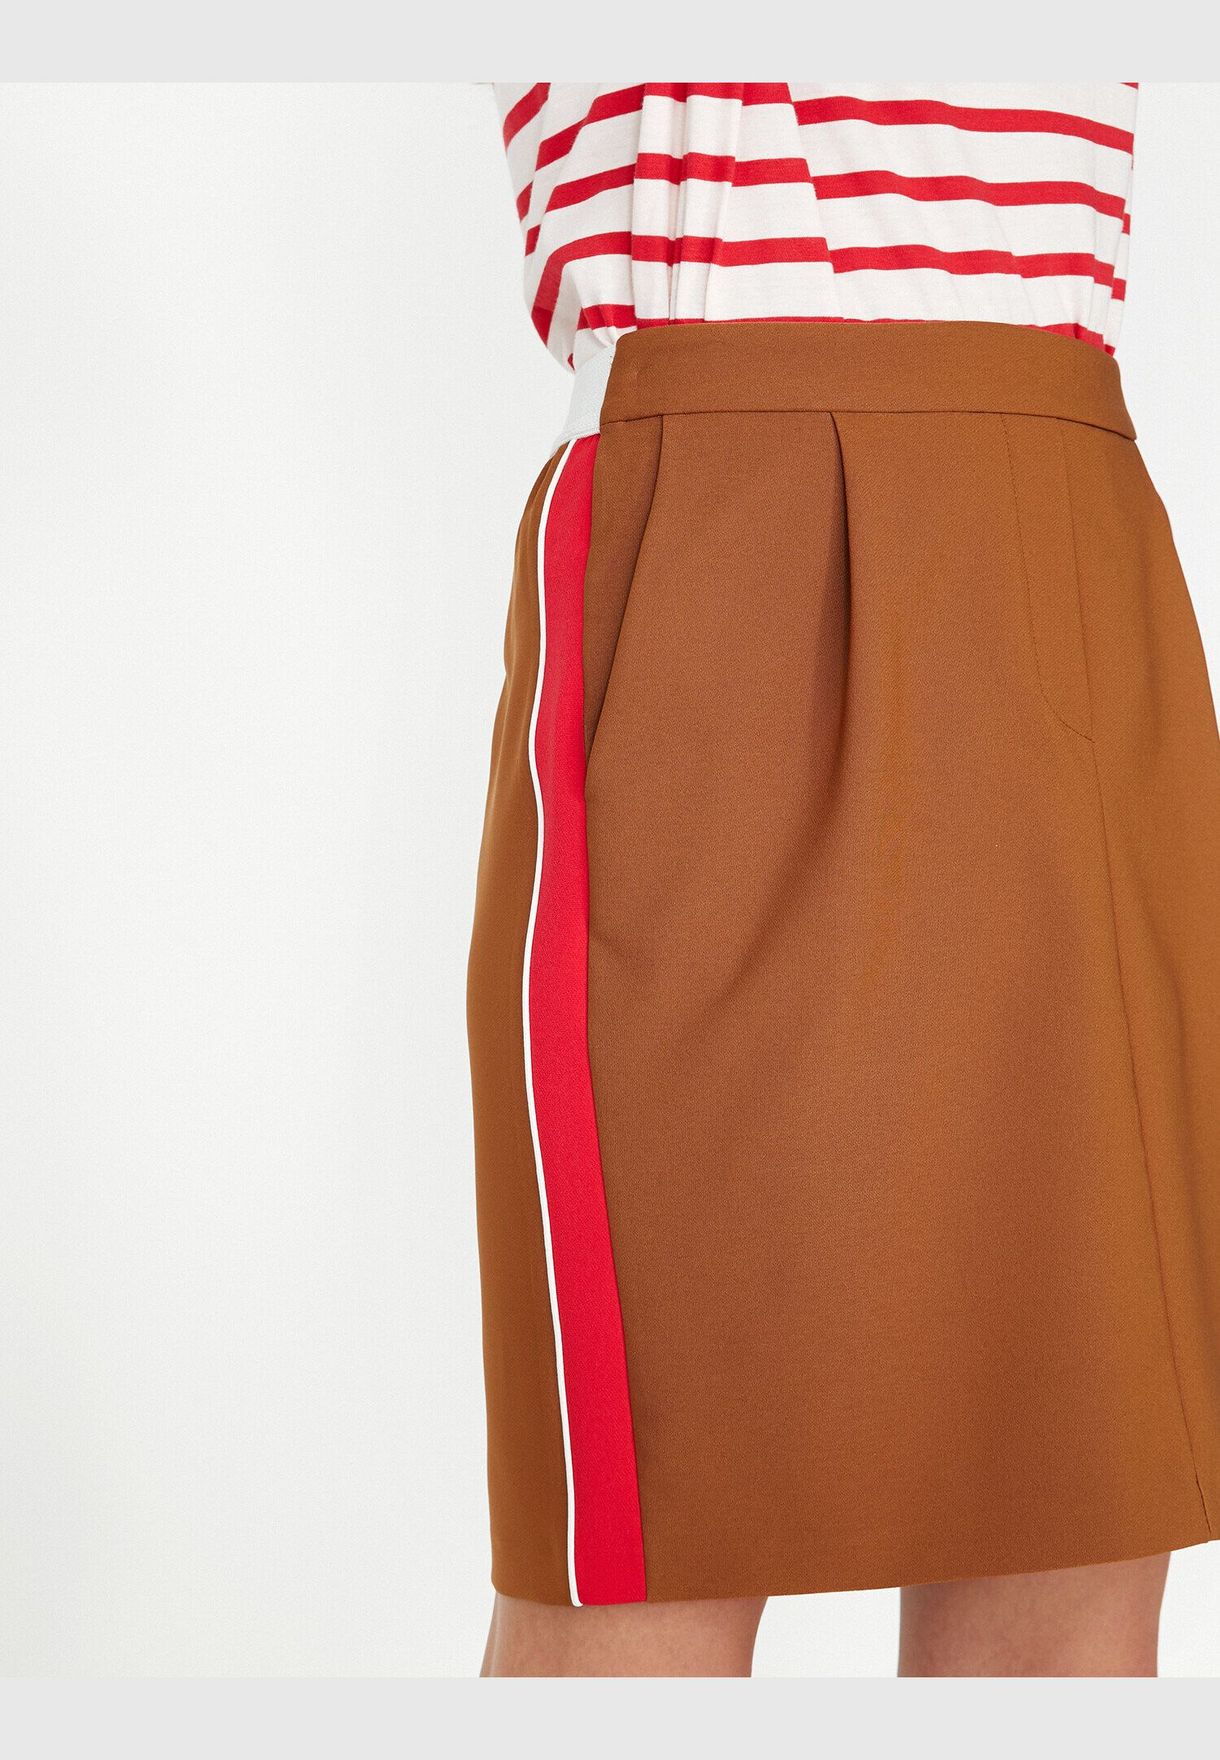 Binding Detail Skirt